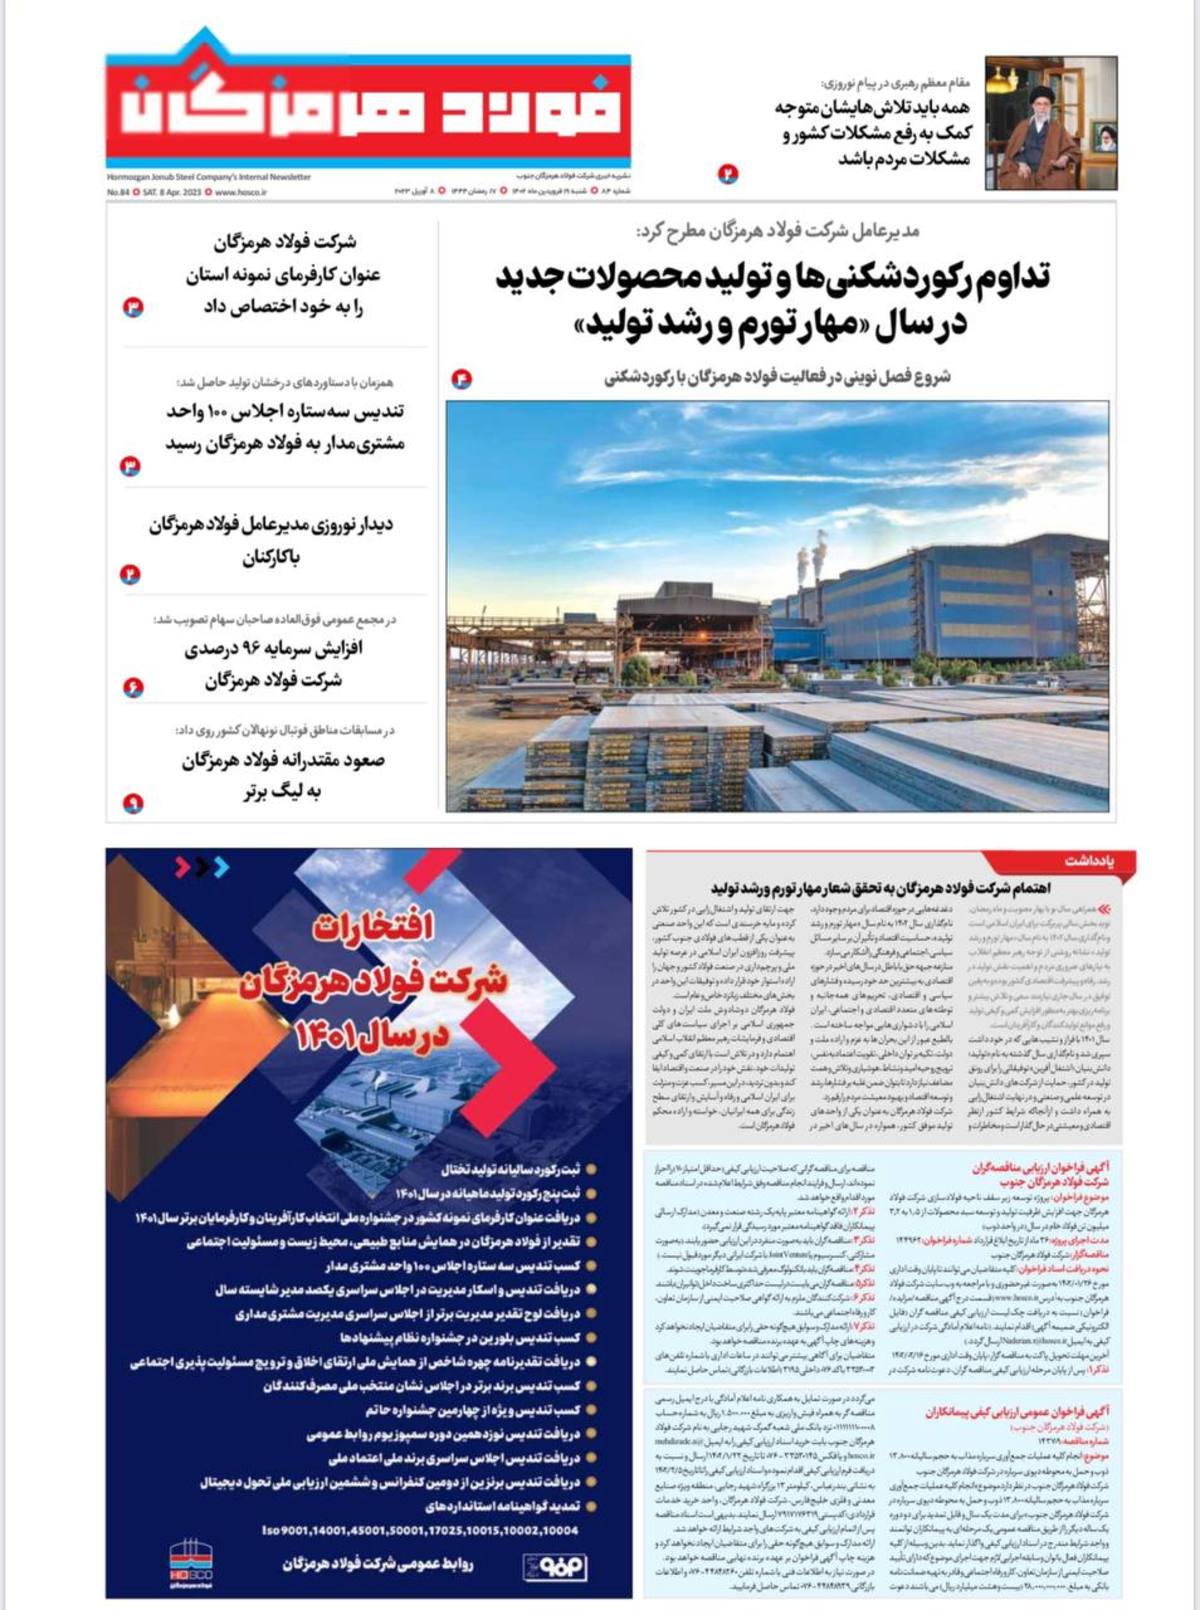 هشتاد و چهارمین شماره خبرنامه داخلی شرکت فولاد هرمزگان منتشر شد